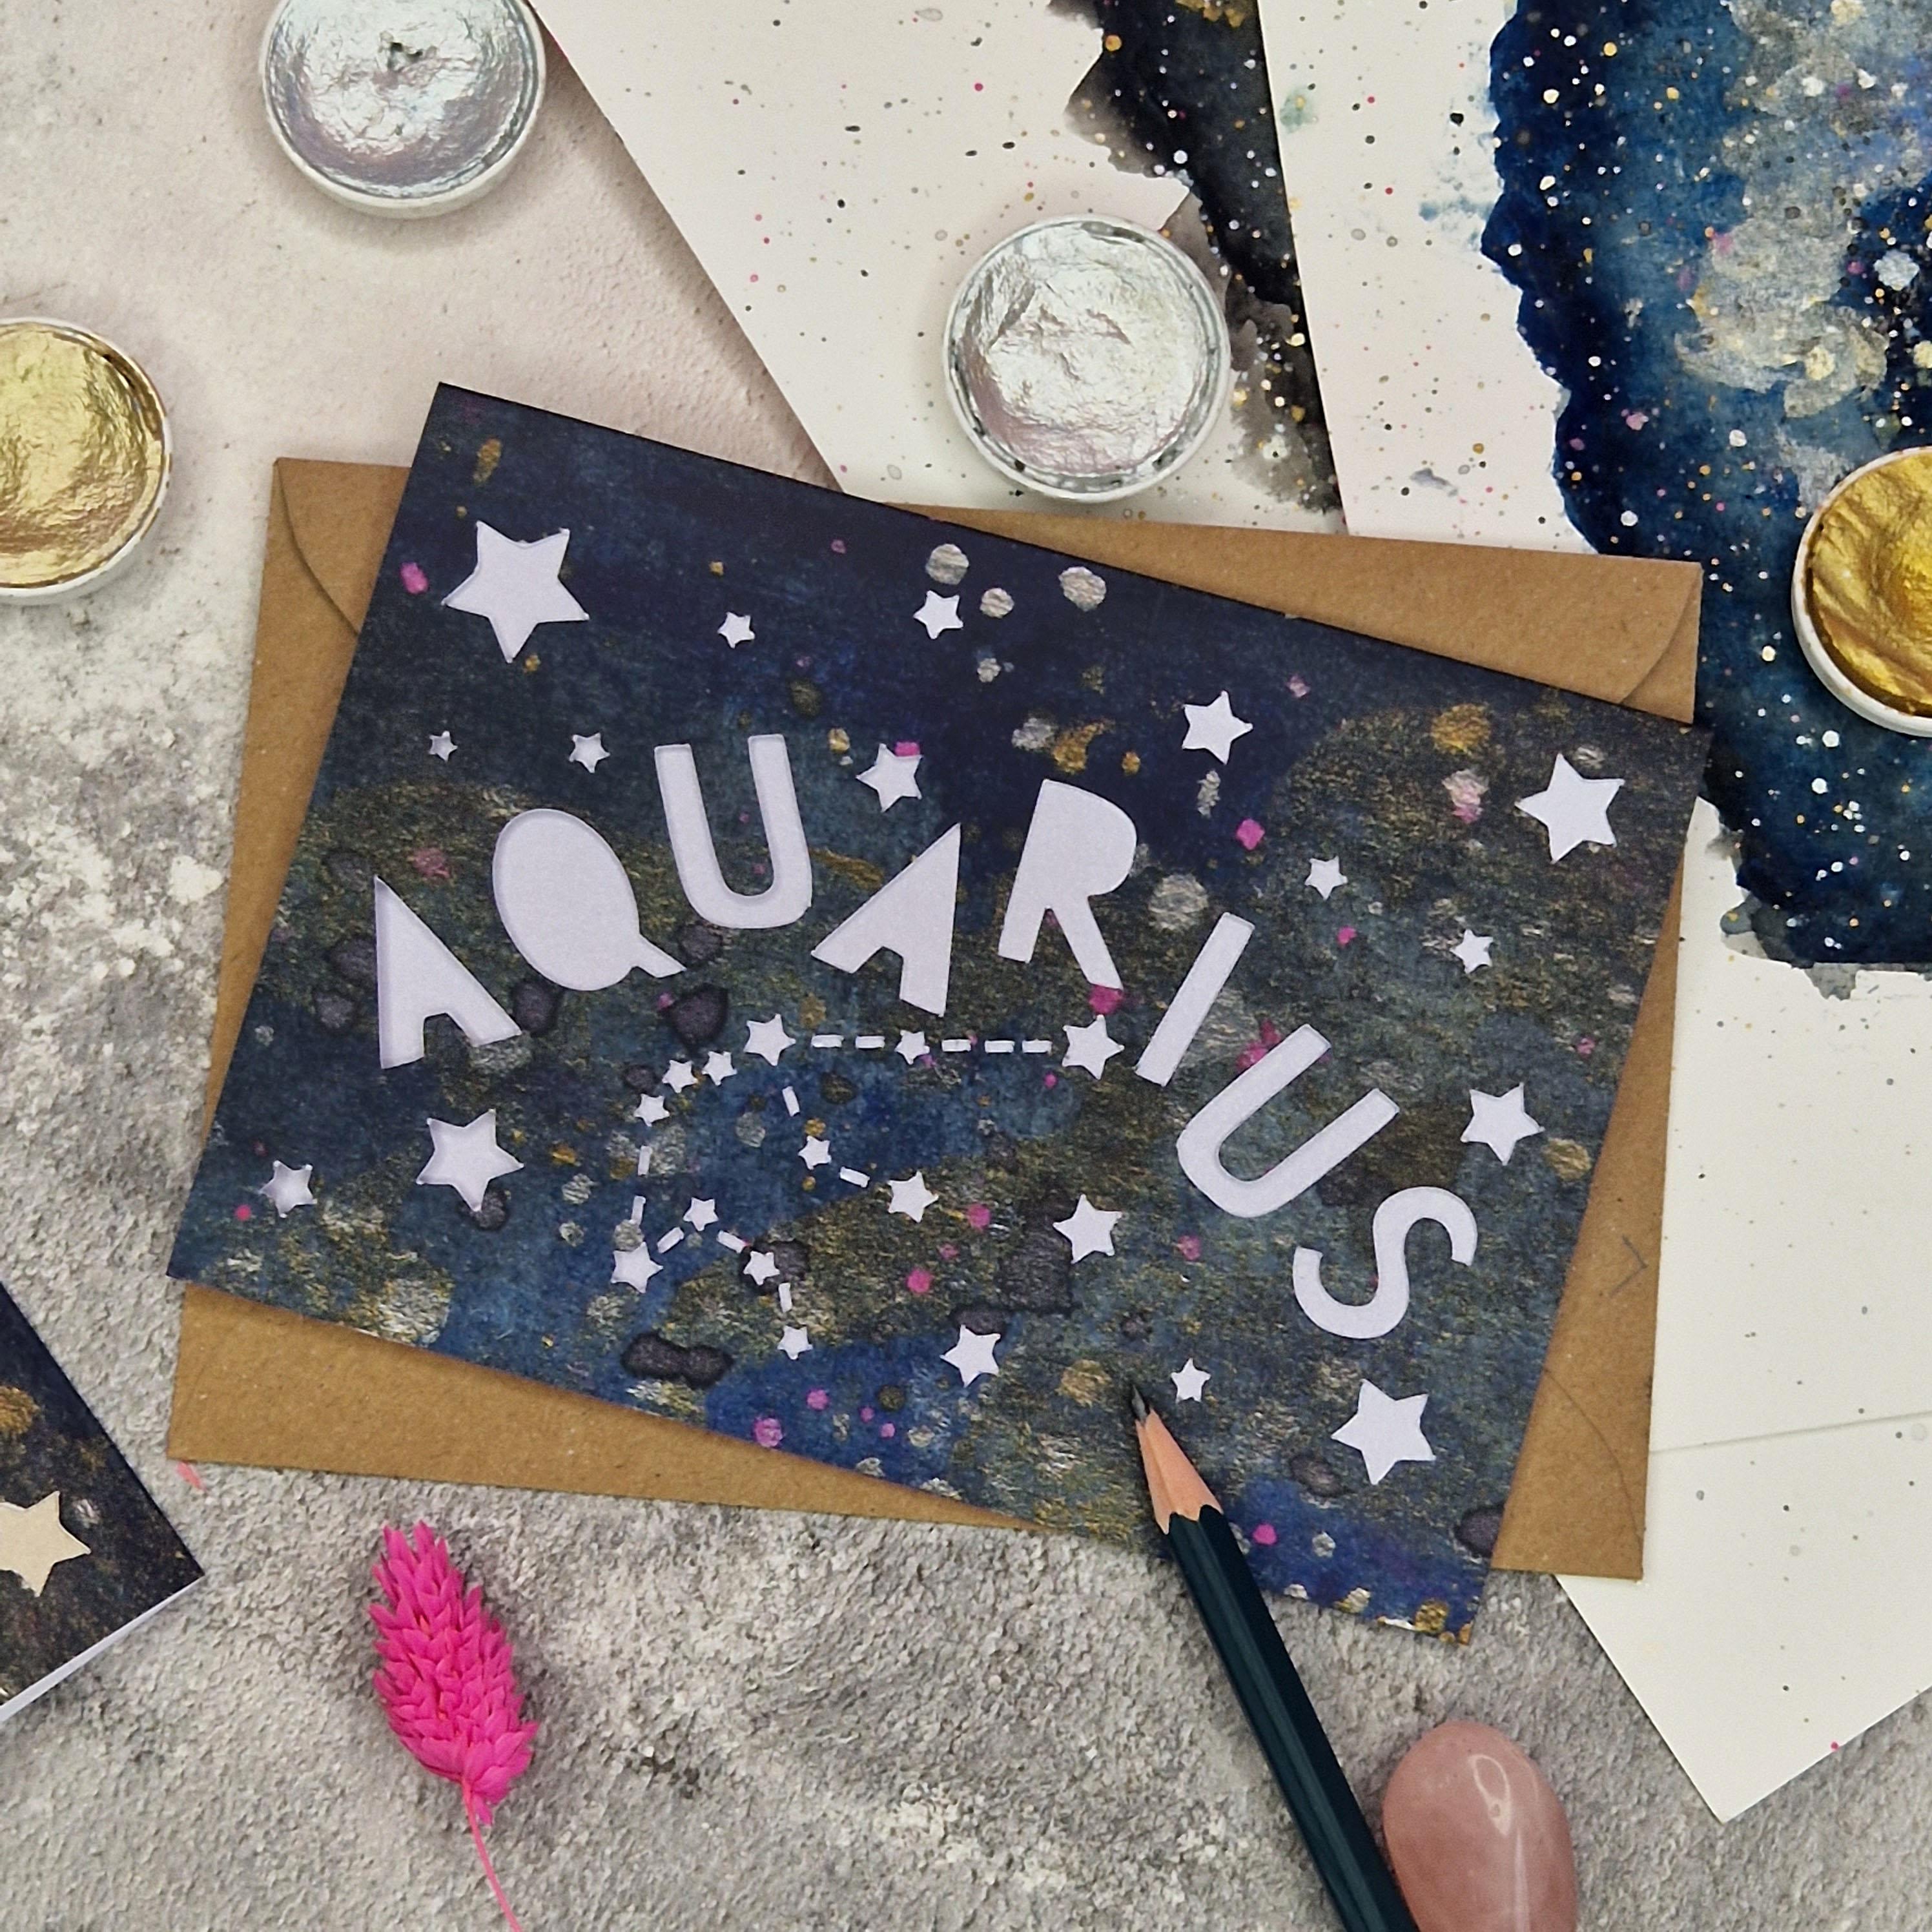 A6 card with an Aquarius theme